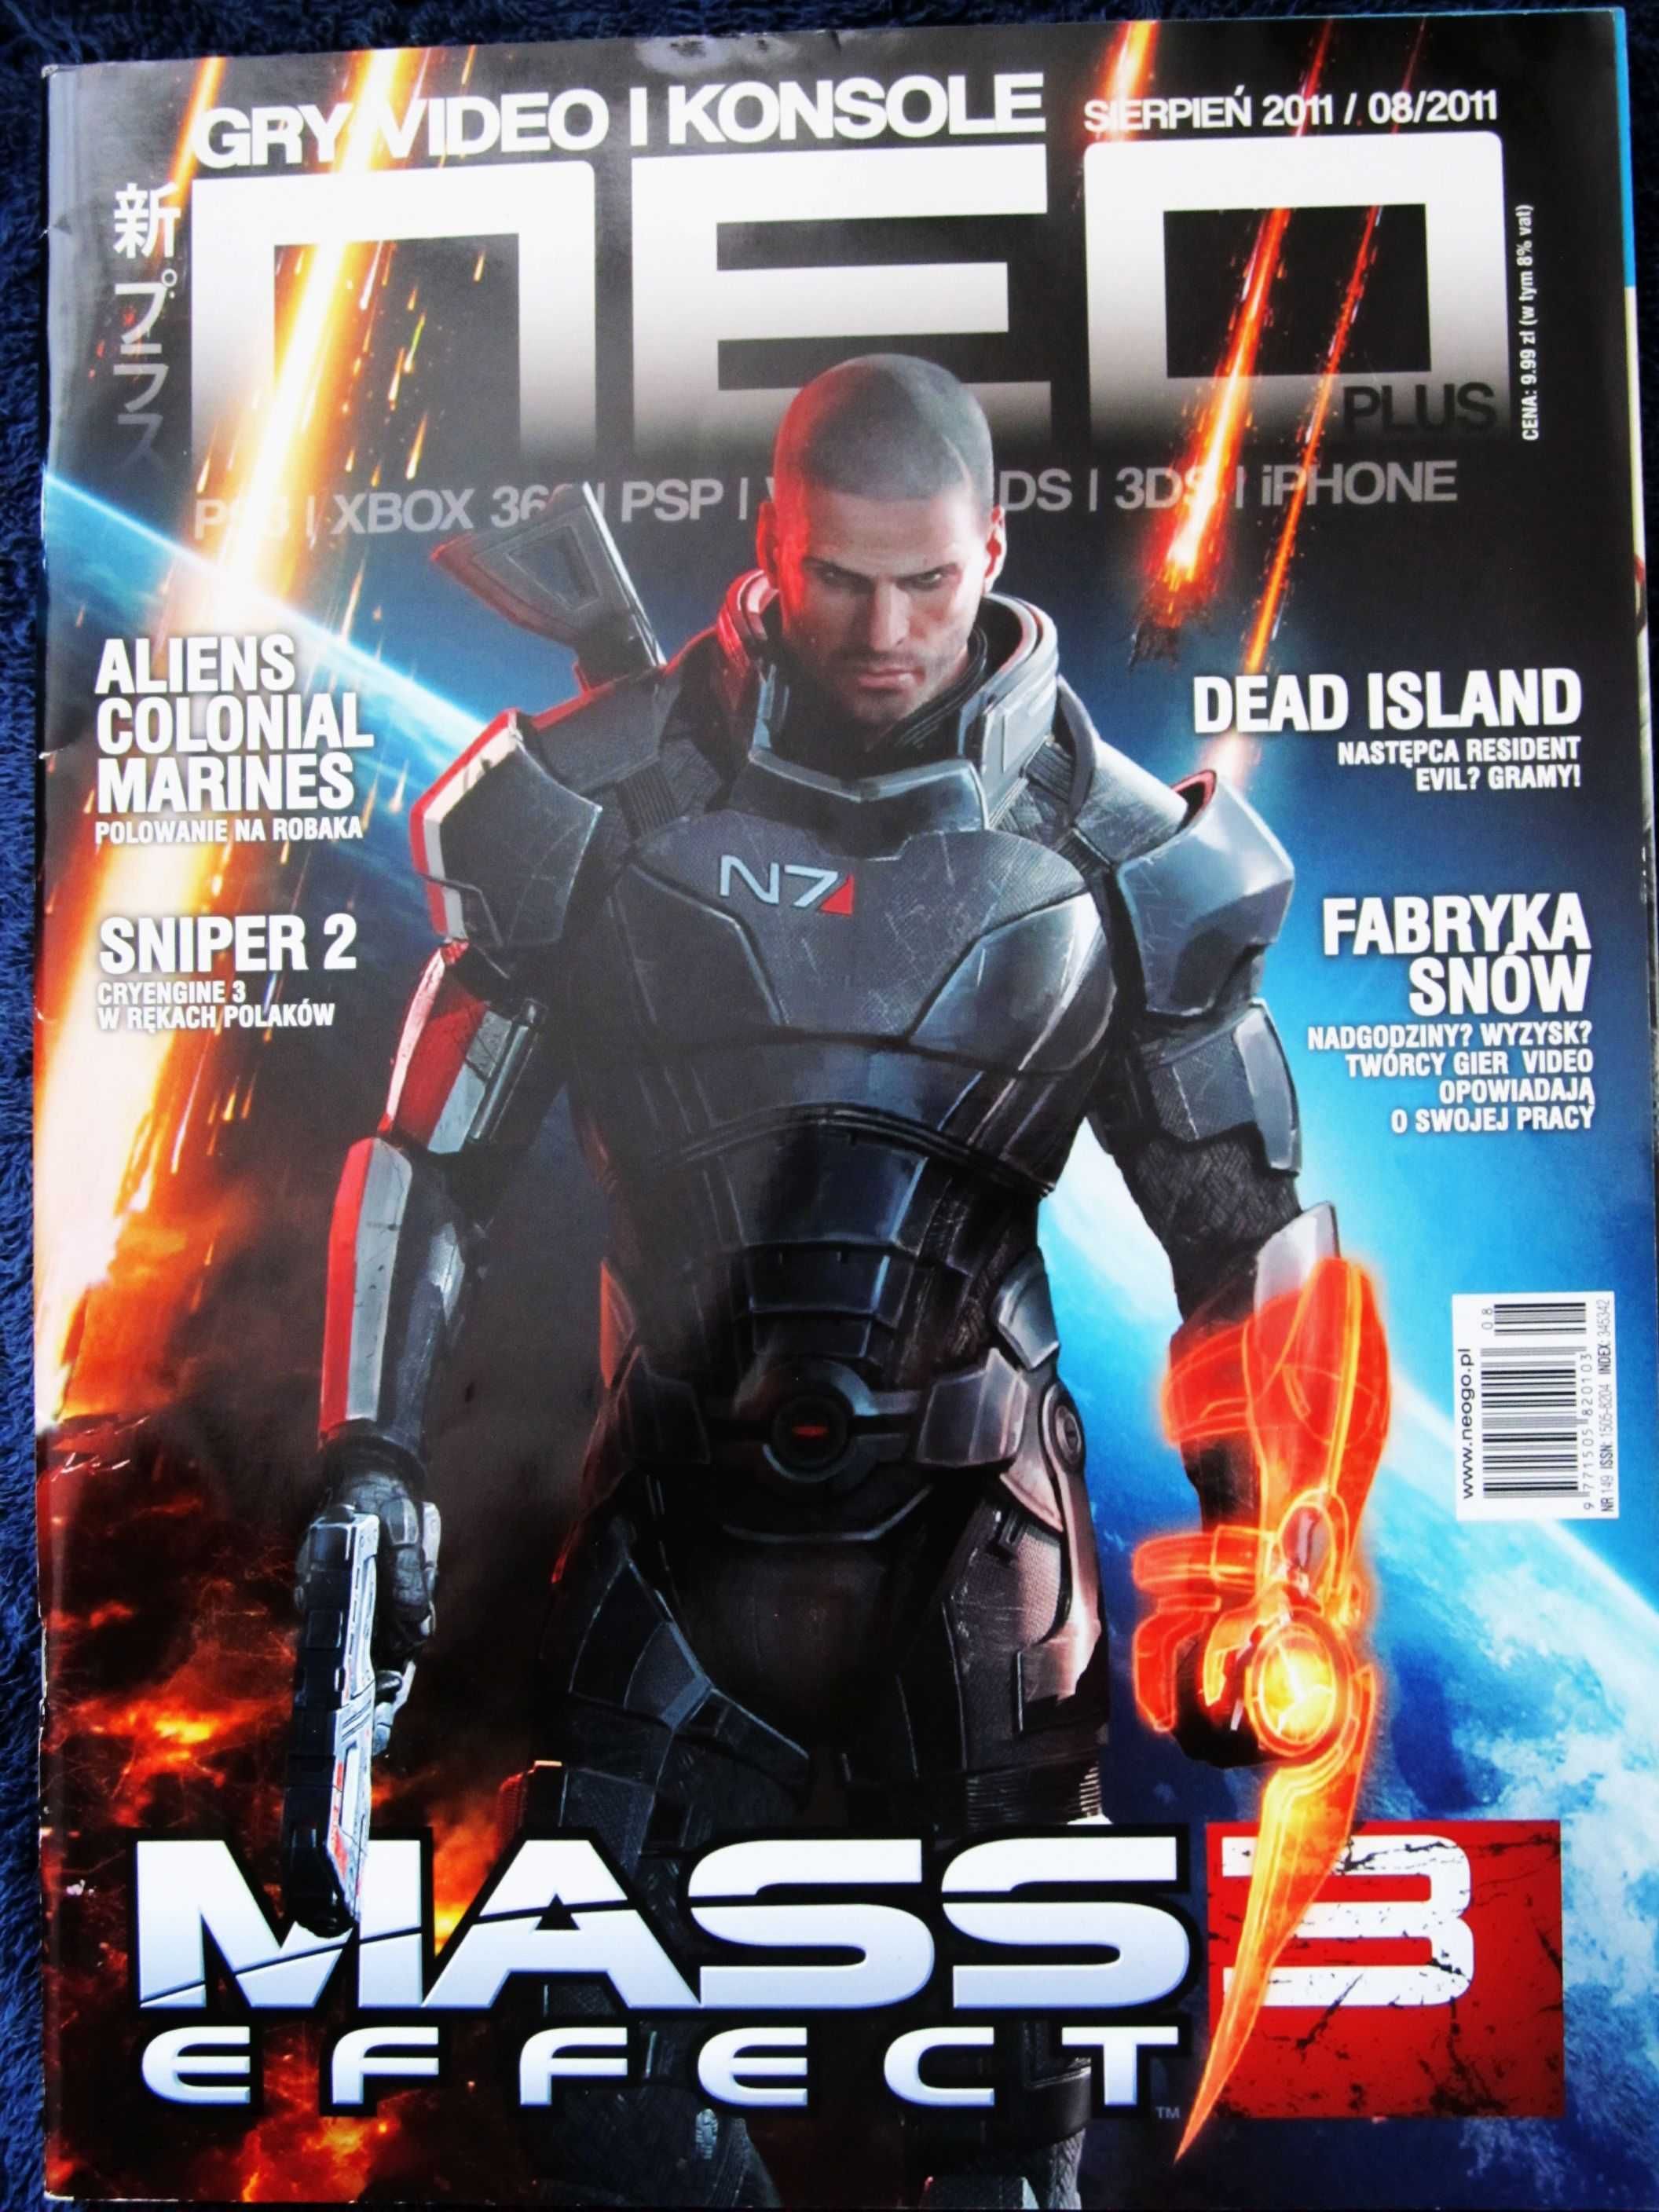 NEO sierpień 2011 Mass 3 Effect,Dead Island,Snipper 2,Aliens Colonial